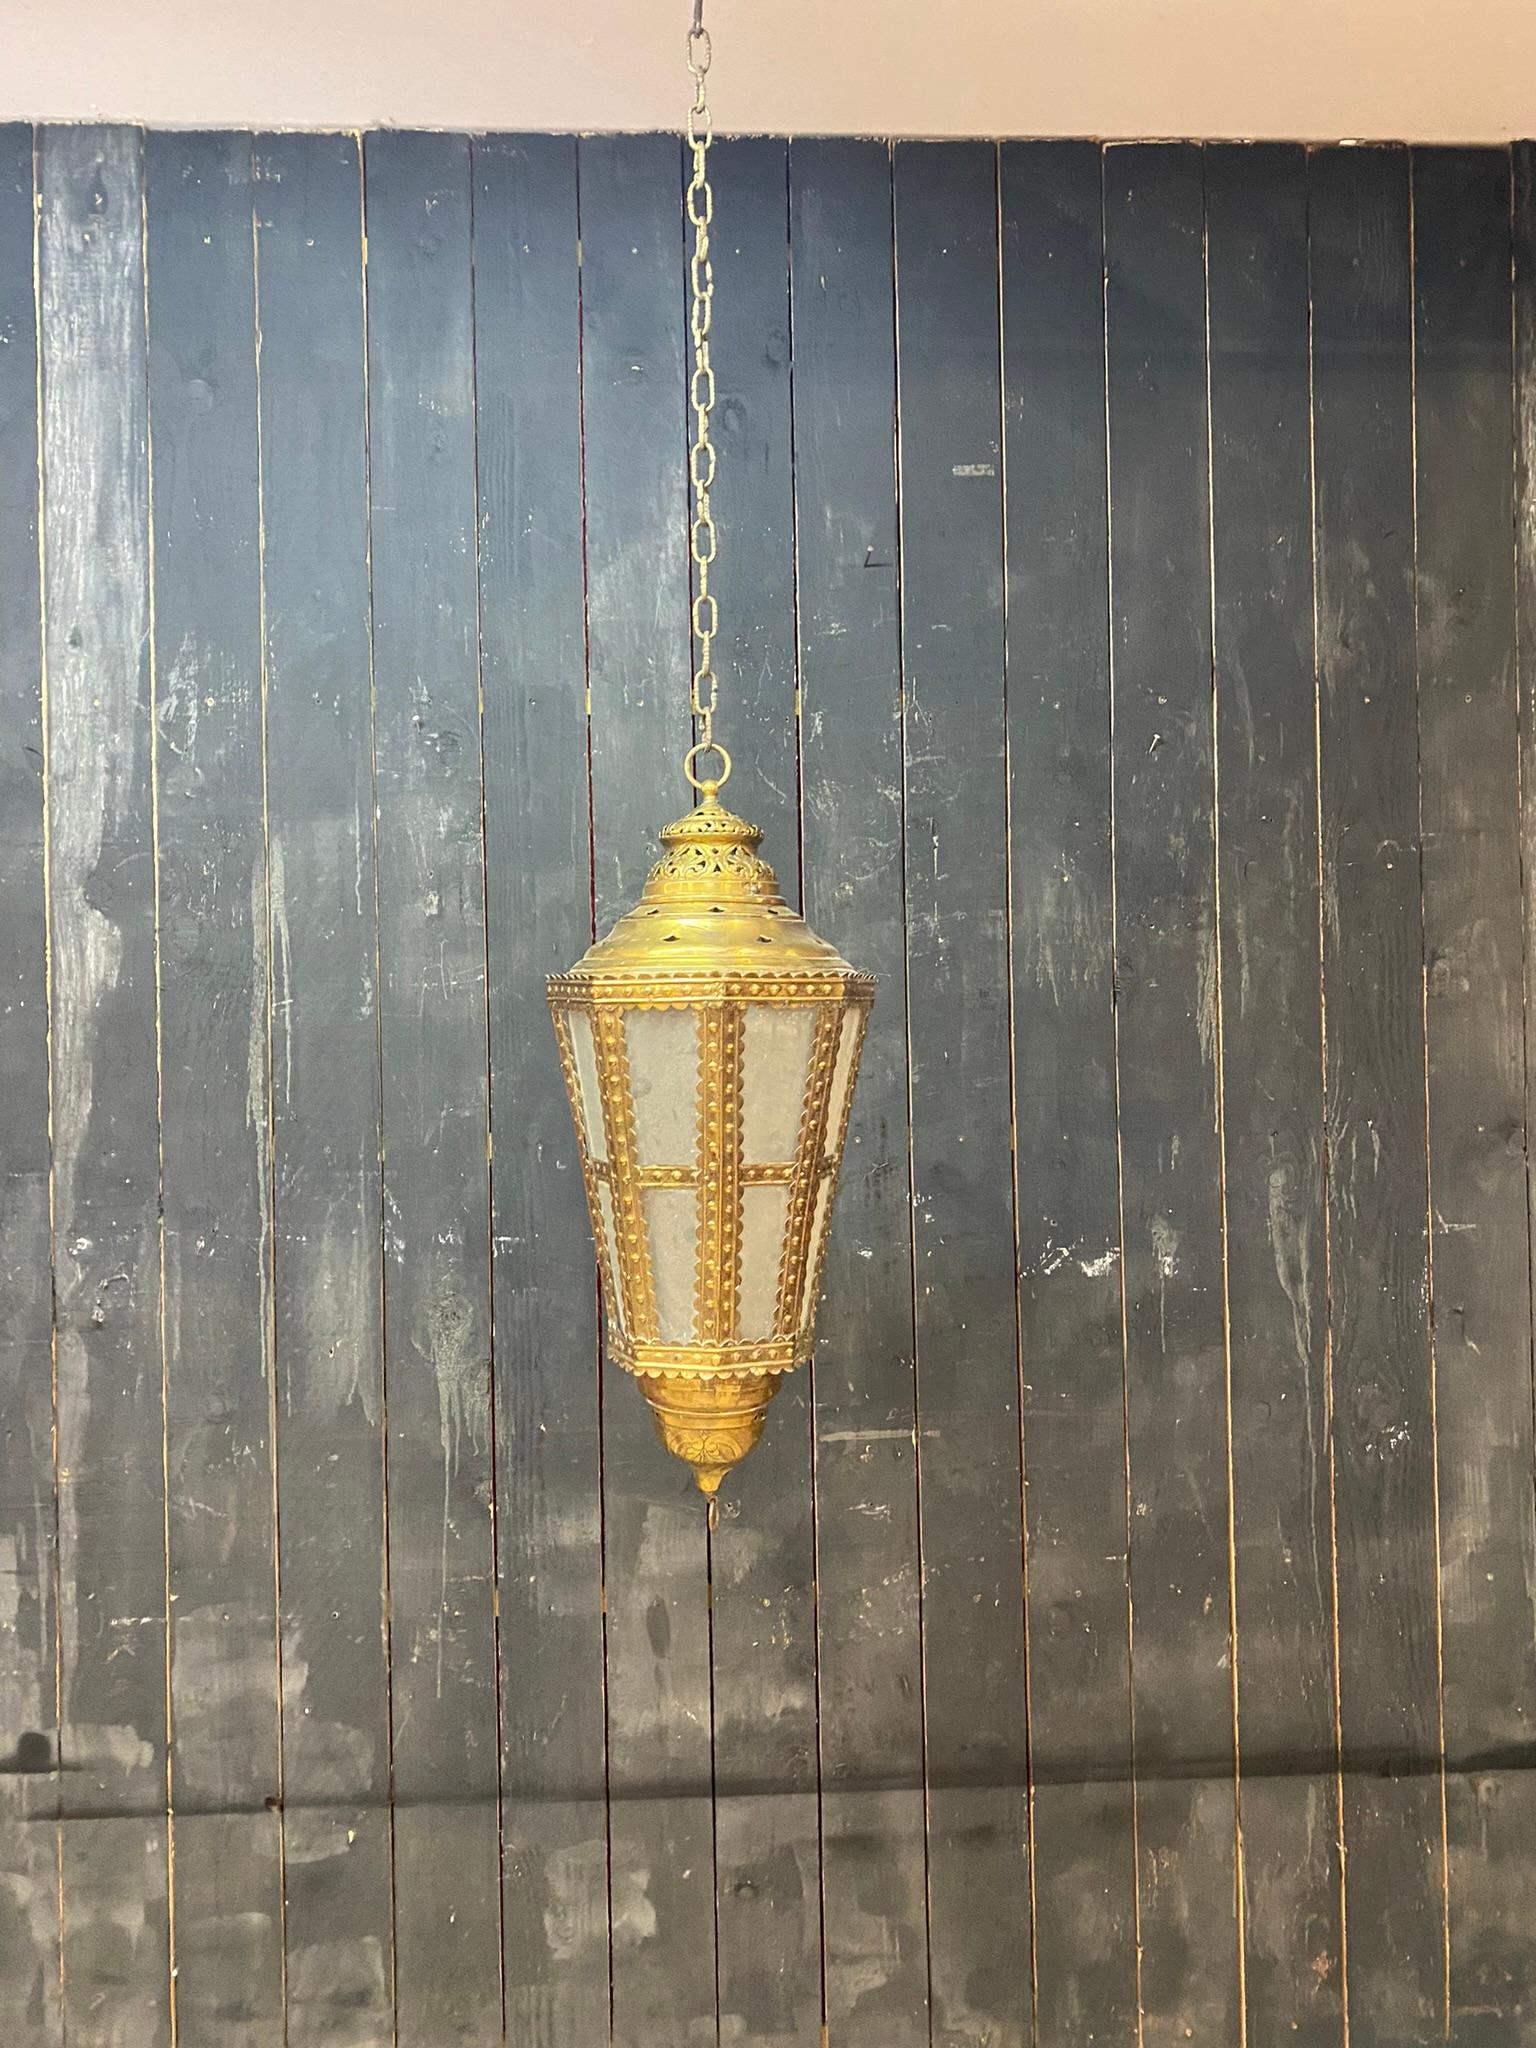 Ancienne lanterne flamande en cuivre et verre du 18e siècle, non électrifiée.
place pour une bougie,
nombreuses fissures et petites cassures, qui n'enlèvent rien au charme de cette lanterne
hauteur avec sa chaîne : 69